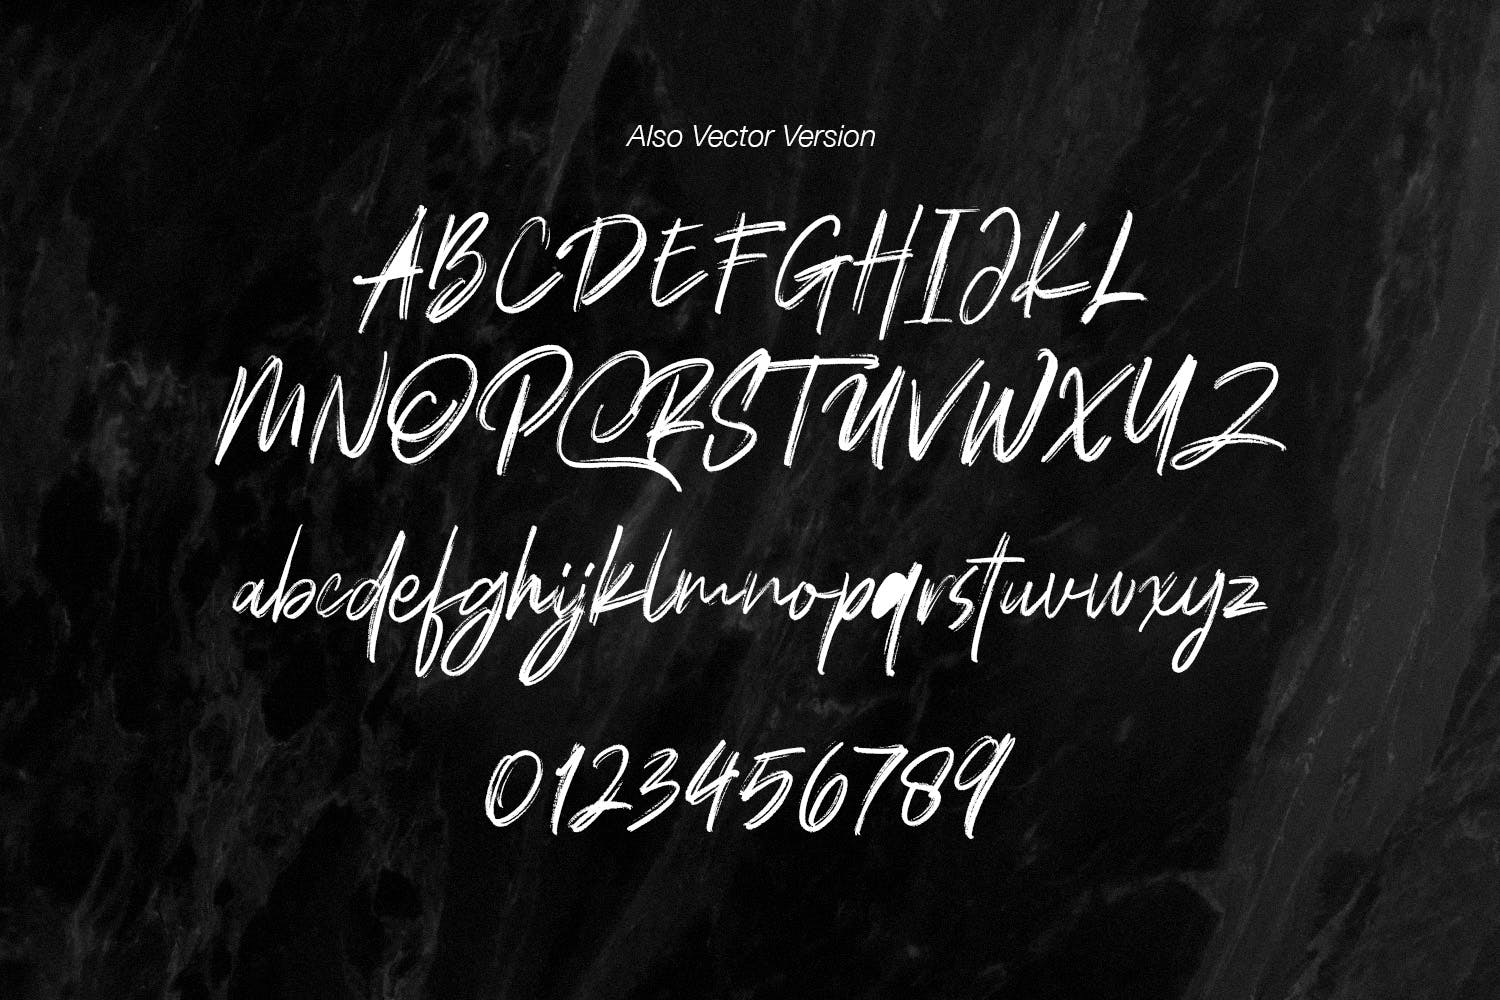 干笔刷英文画笔SVG字体下载 Polandic SVG Brush Font插图(9)